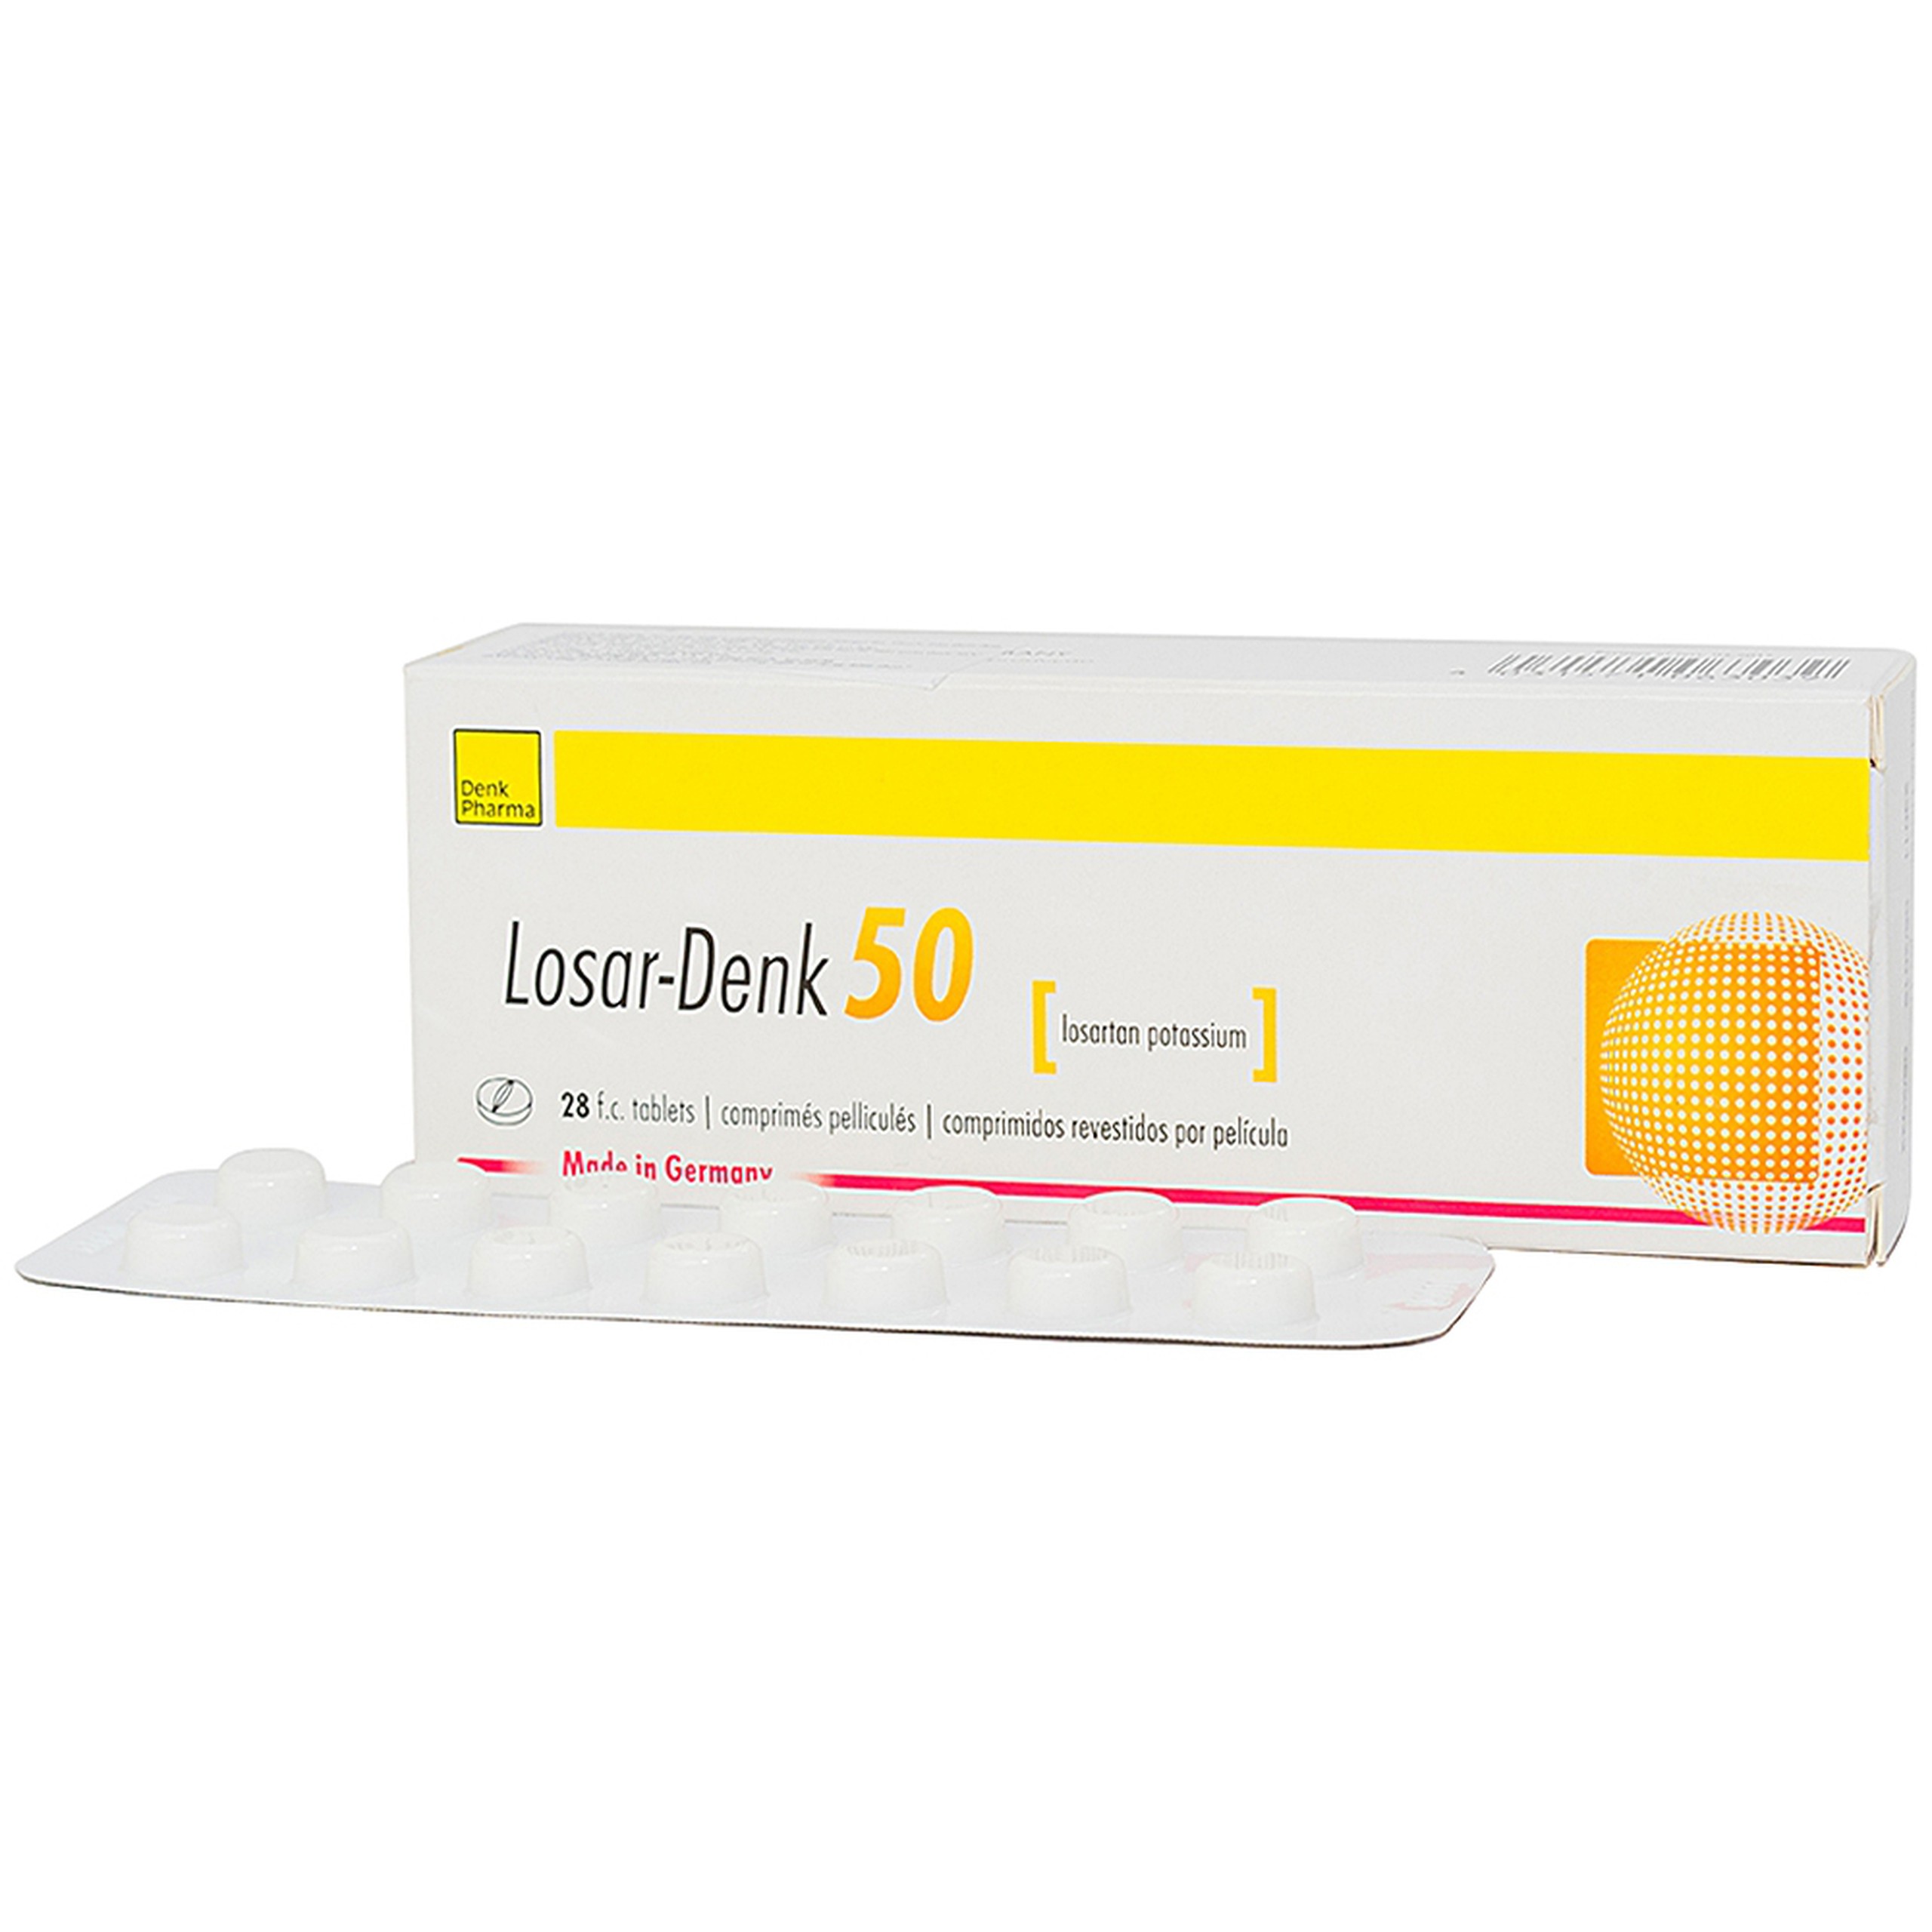 Viên nén Losar-Denk 50 điều trị tăng huyết áp (2 vỉ x 14 viên)